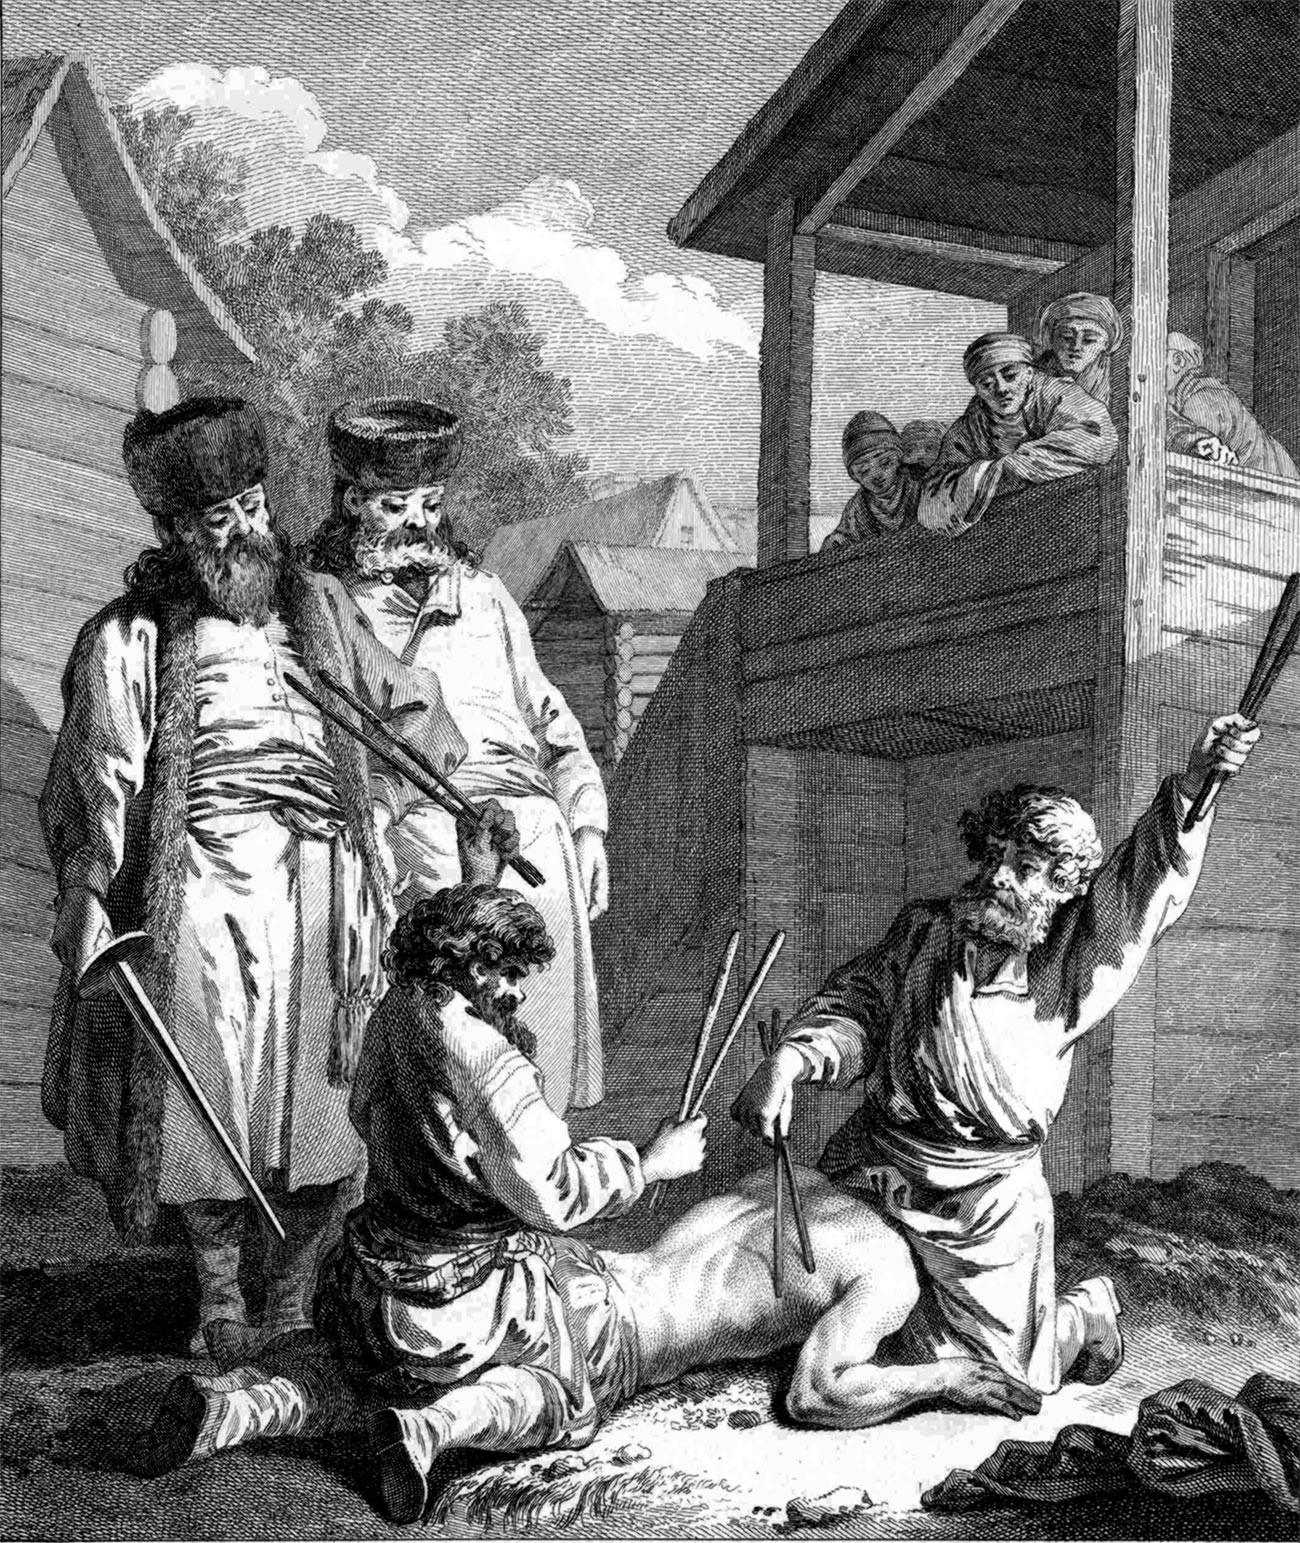 La punizione a colpi di bastone era piuttosto diffusa nella Russia dell'epoca 